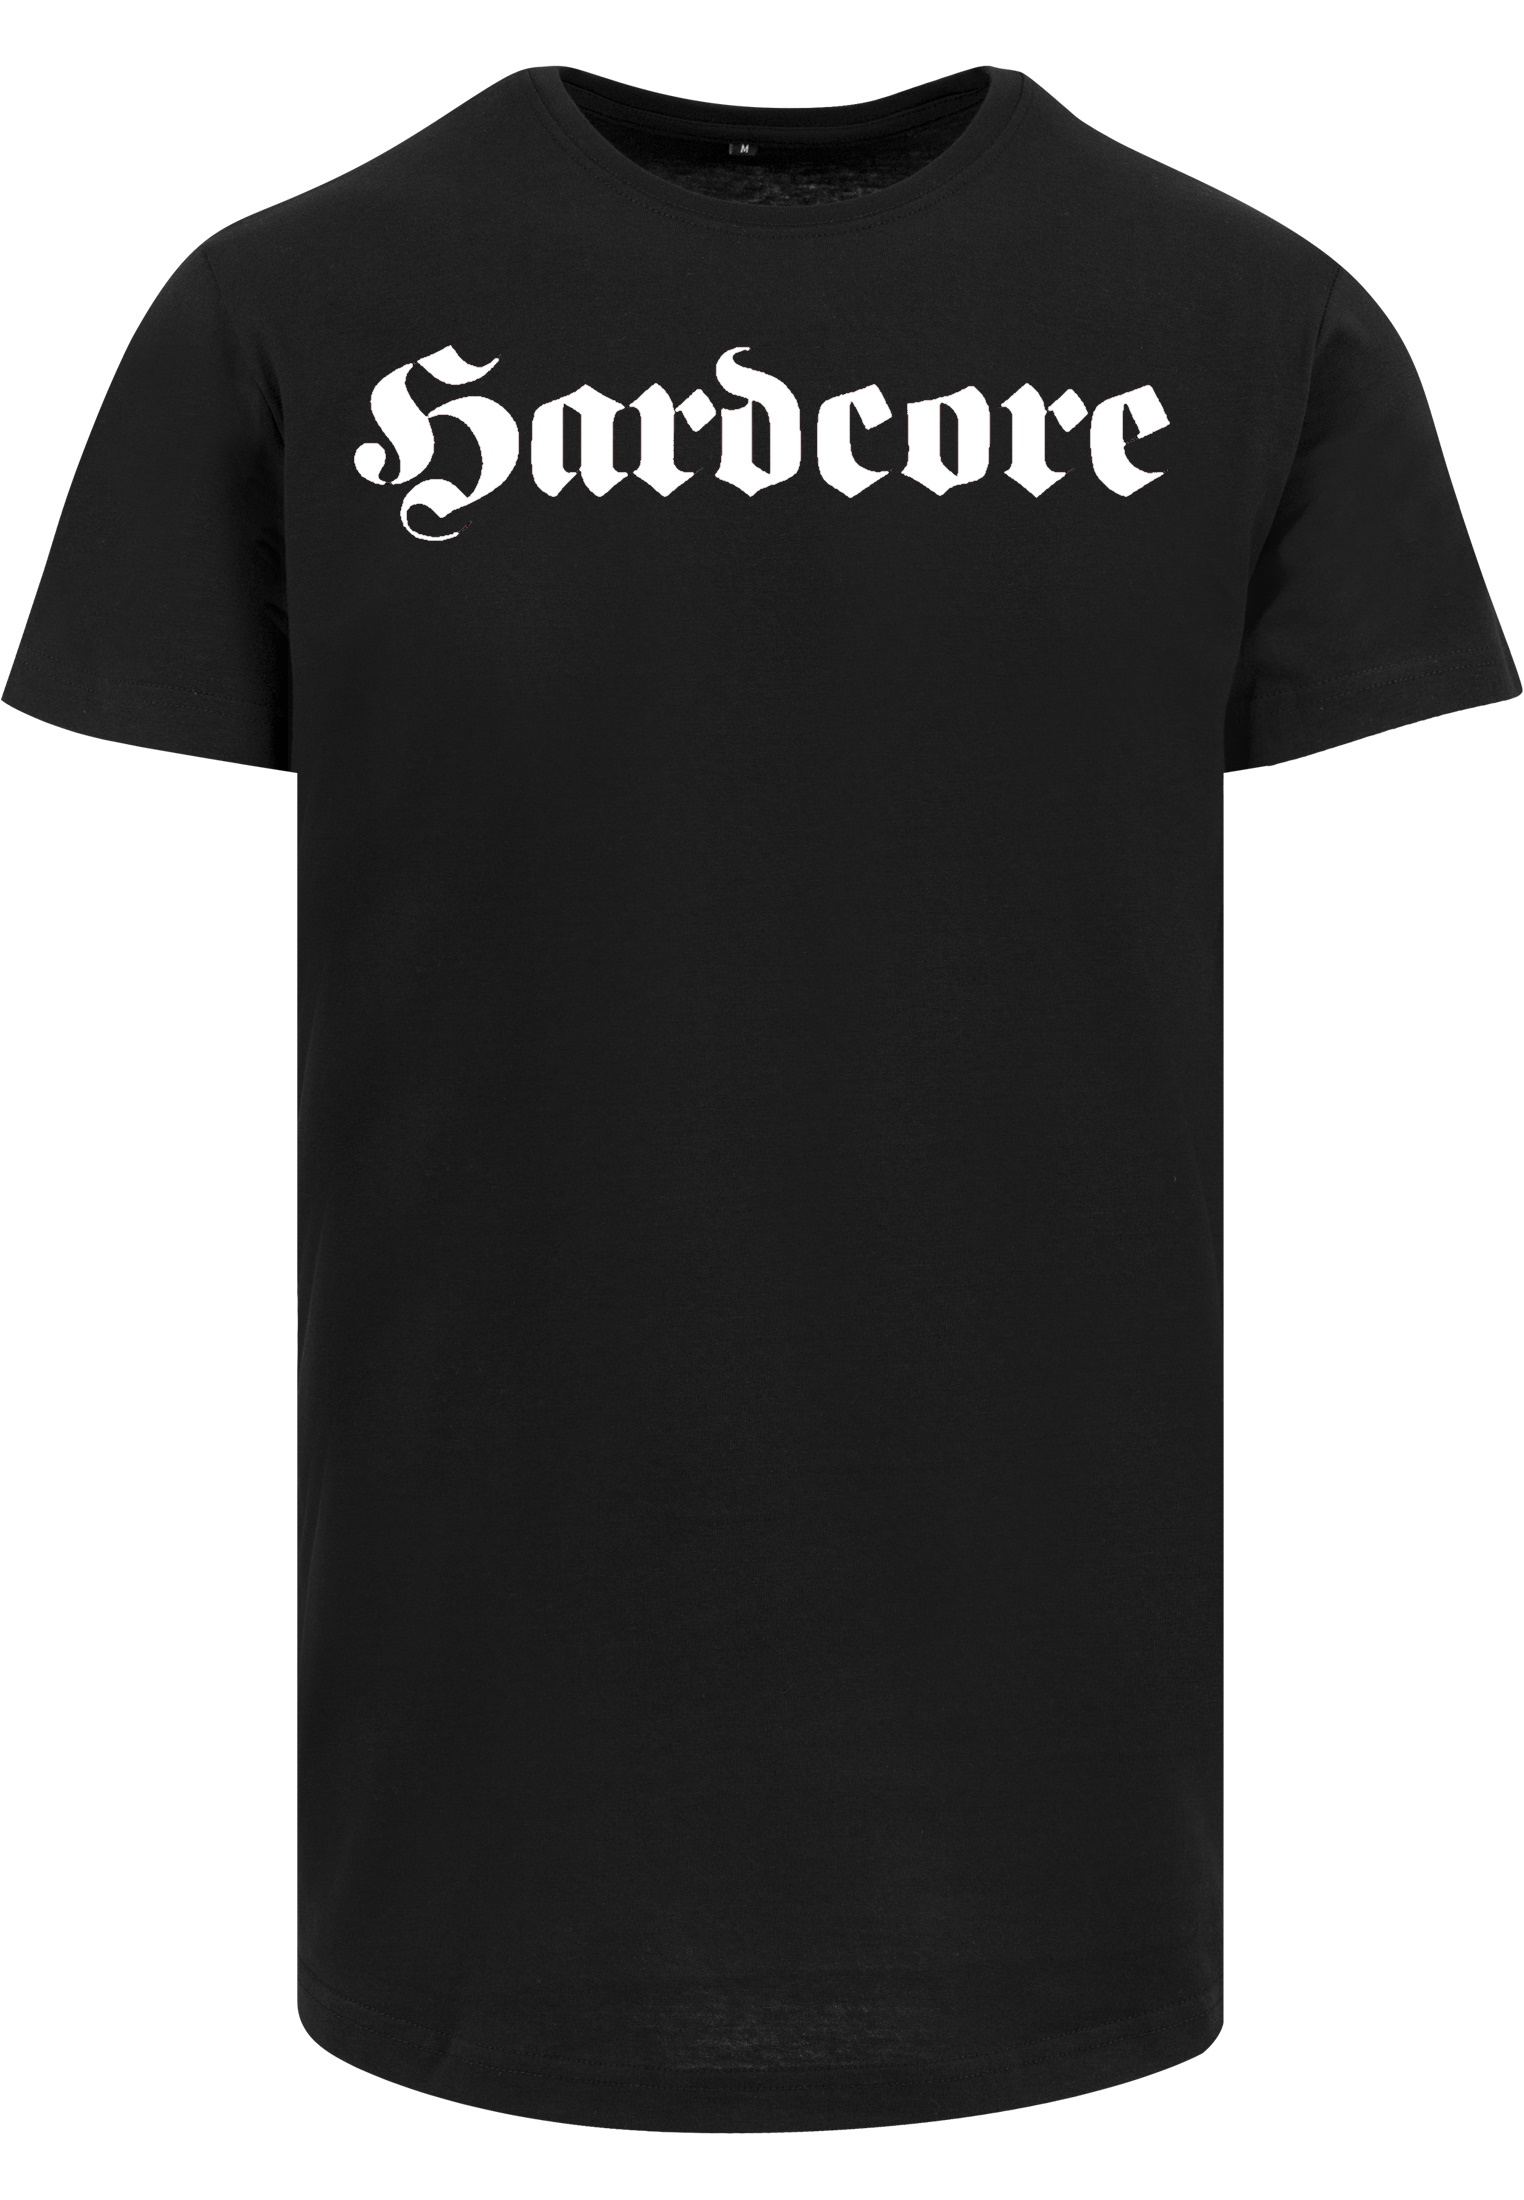 T-Shirt von SONICX Model " HARDCORE OLDSCOOL"  Hardcore Style  in Schwarz Weiss  oder Reflex